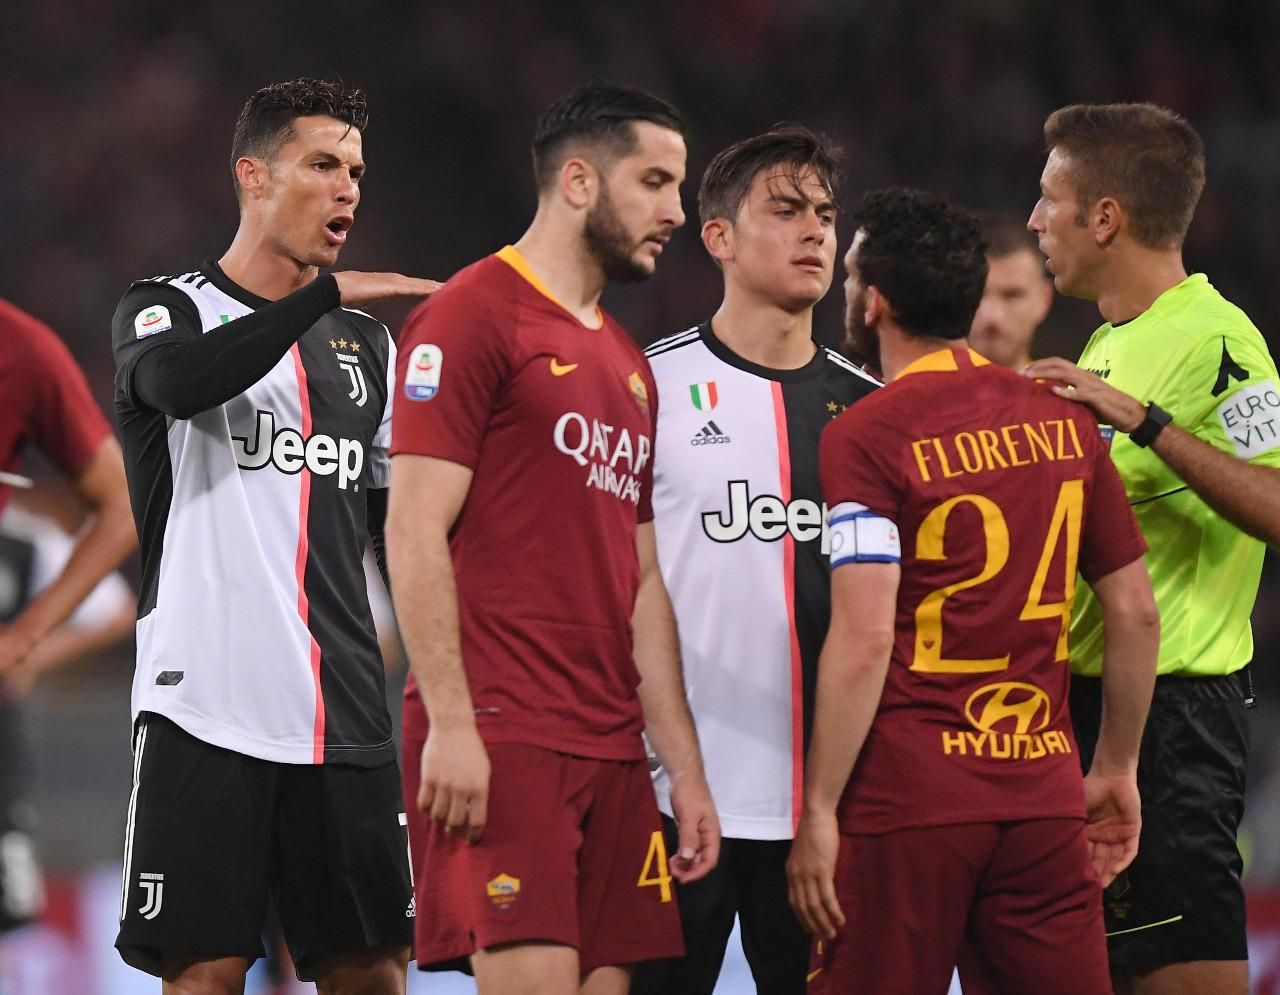 Рома – Ювентус: где смотреть онлайн матч 12 января 2020 